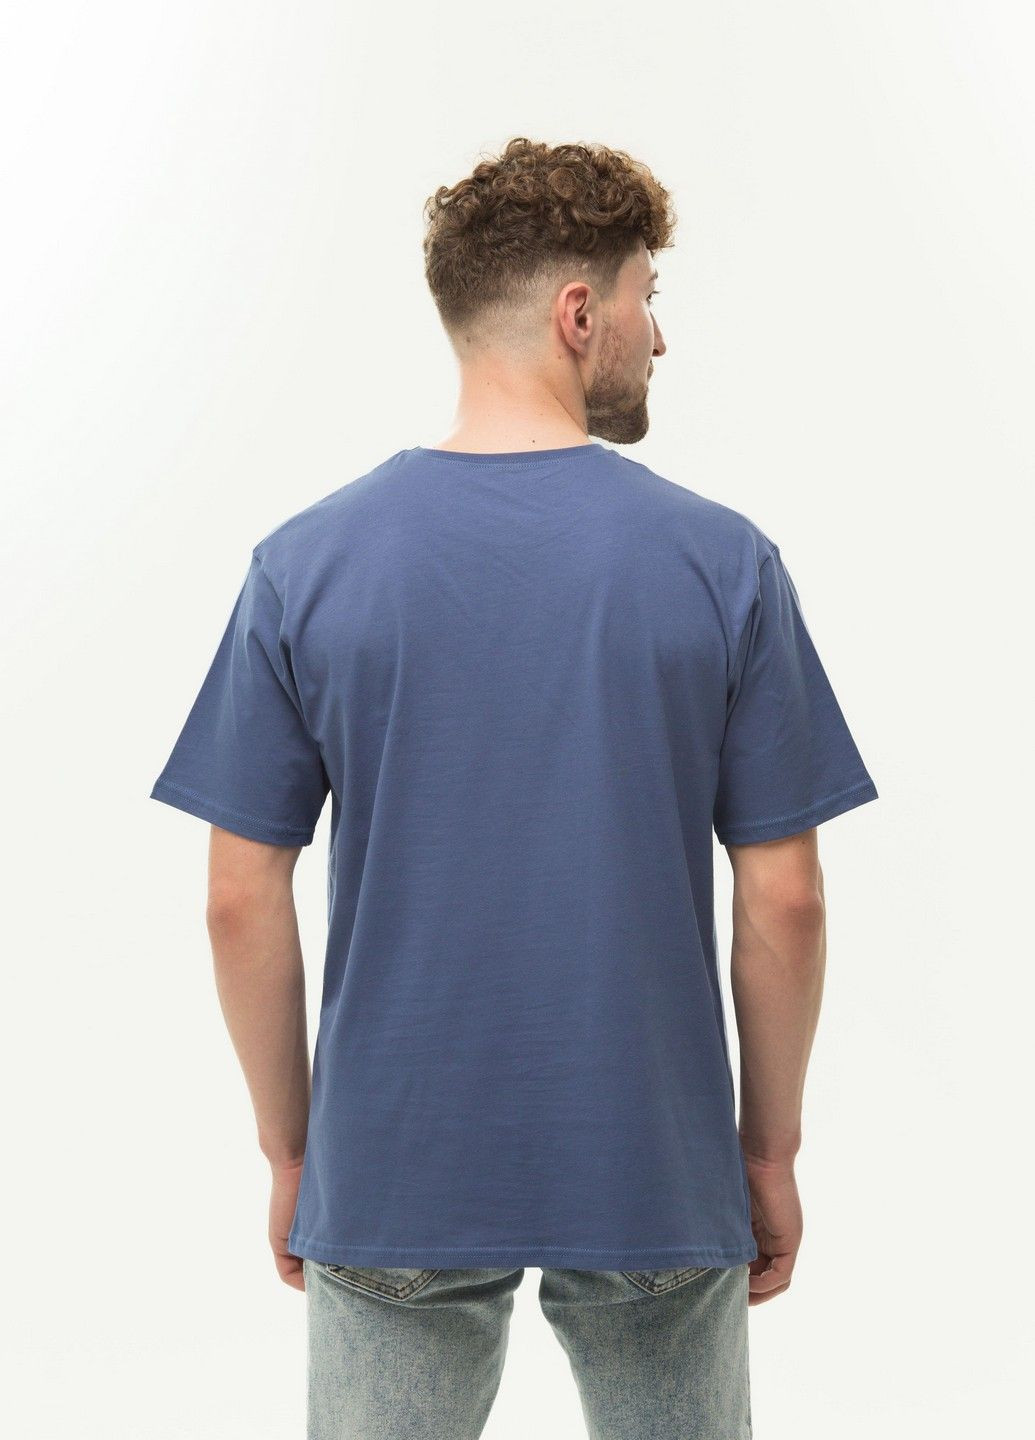 Синяя футболка мужская приталенная свободная Наталюкс 12-1343